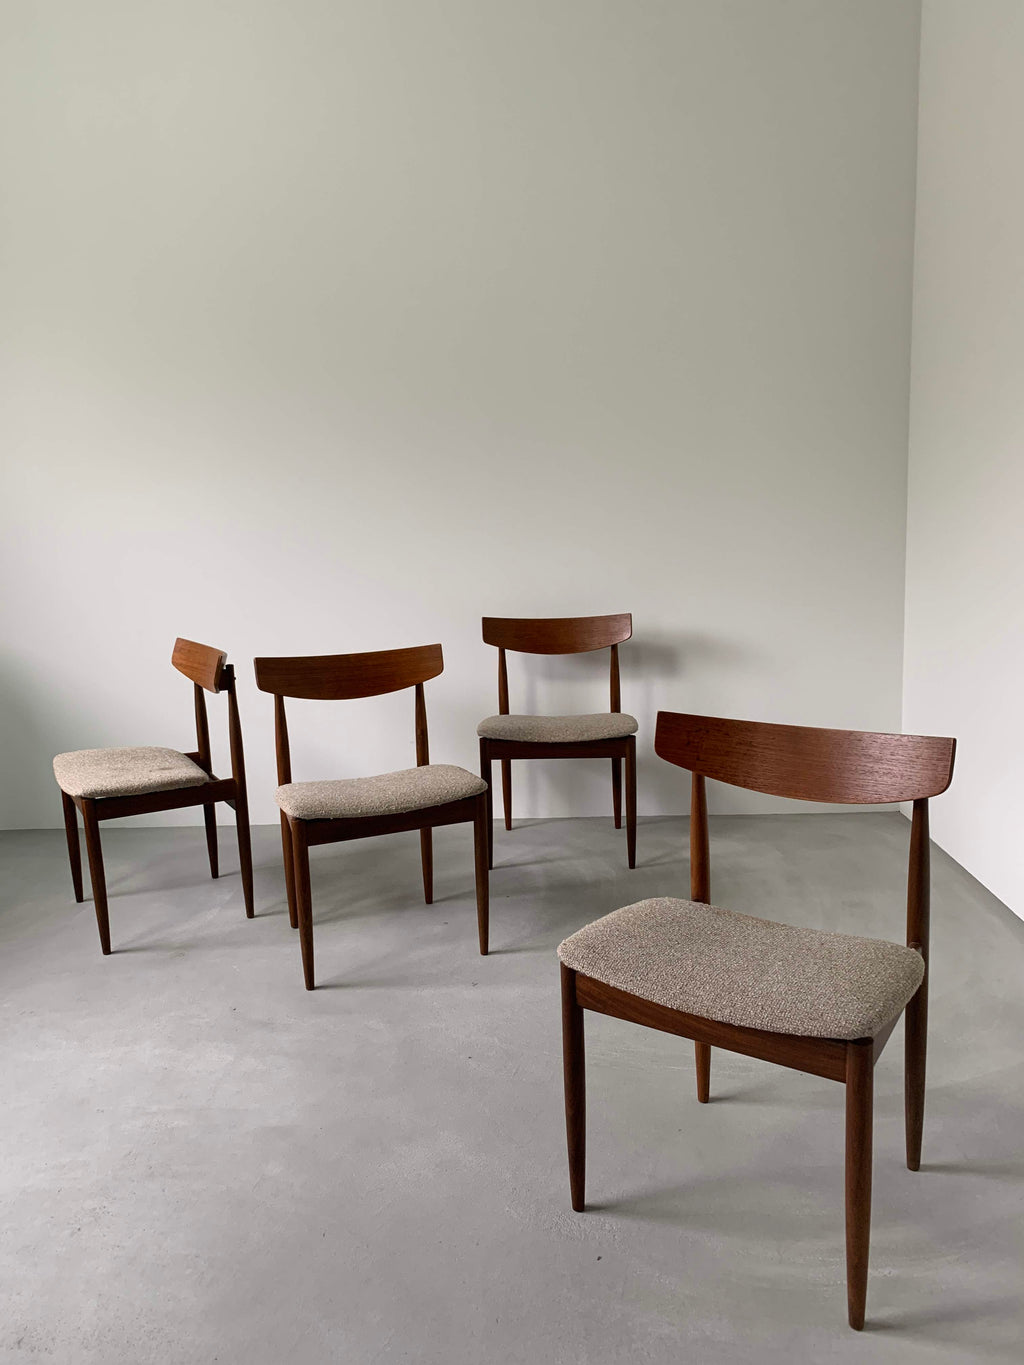 ジープラン 'イブ コ フォード ラーセン' チェア4脚セット / g-plan 'ib koford larsen' chairs set of 4 #0075